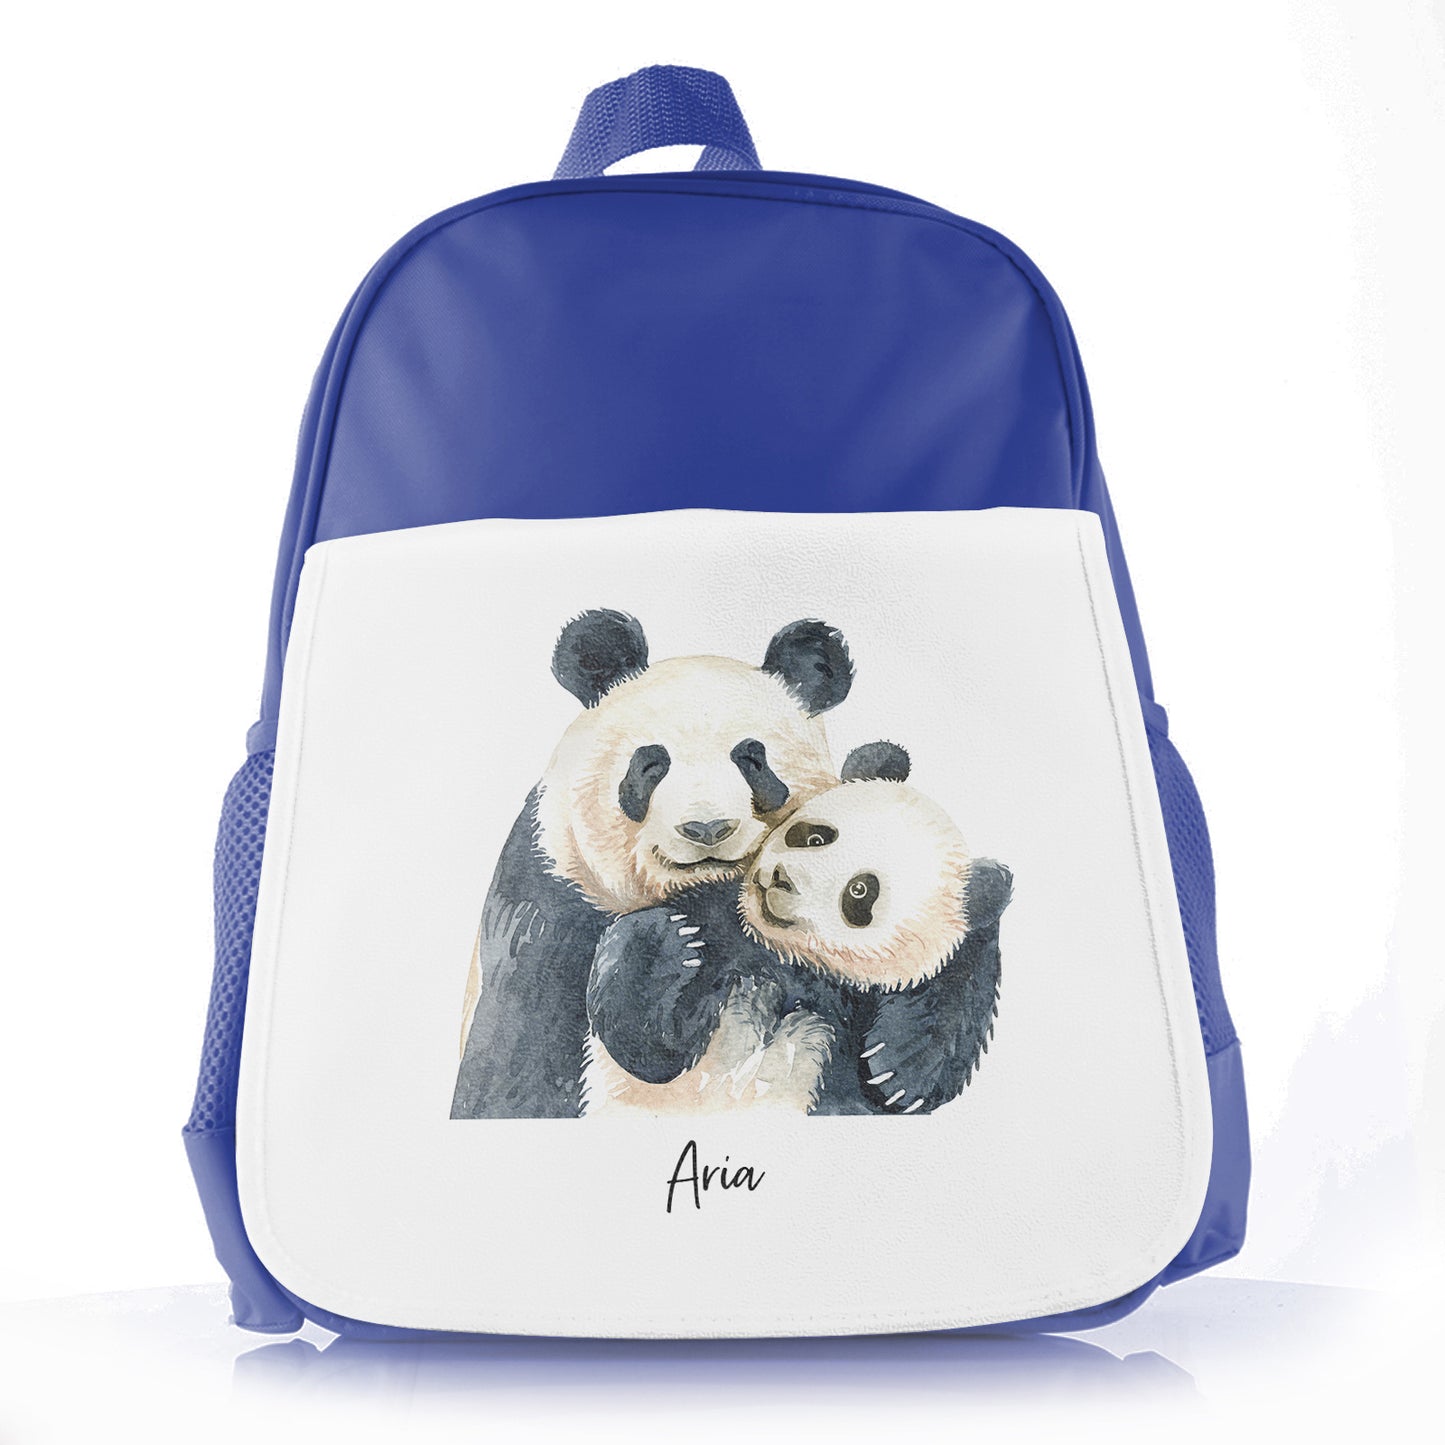 Personalisierte Schultüte mit Begrüßungstext und umarmenden Mama- und Baby-Pandas